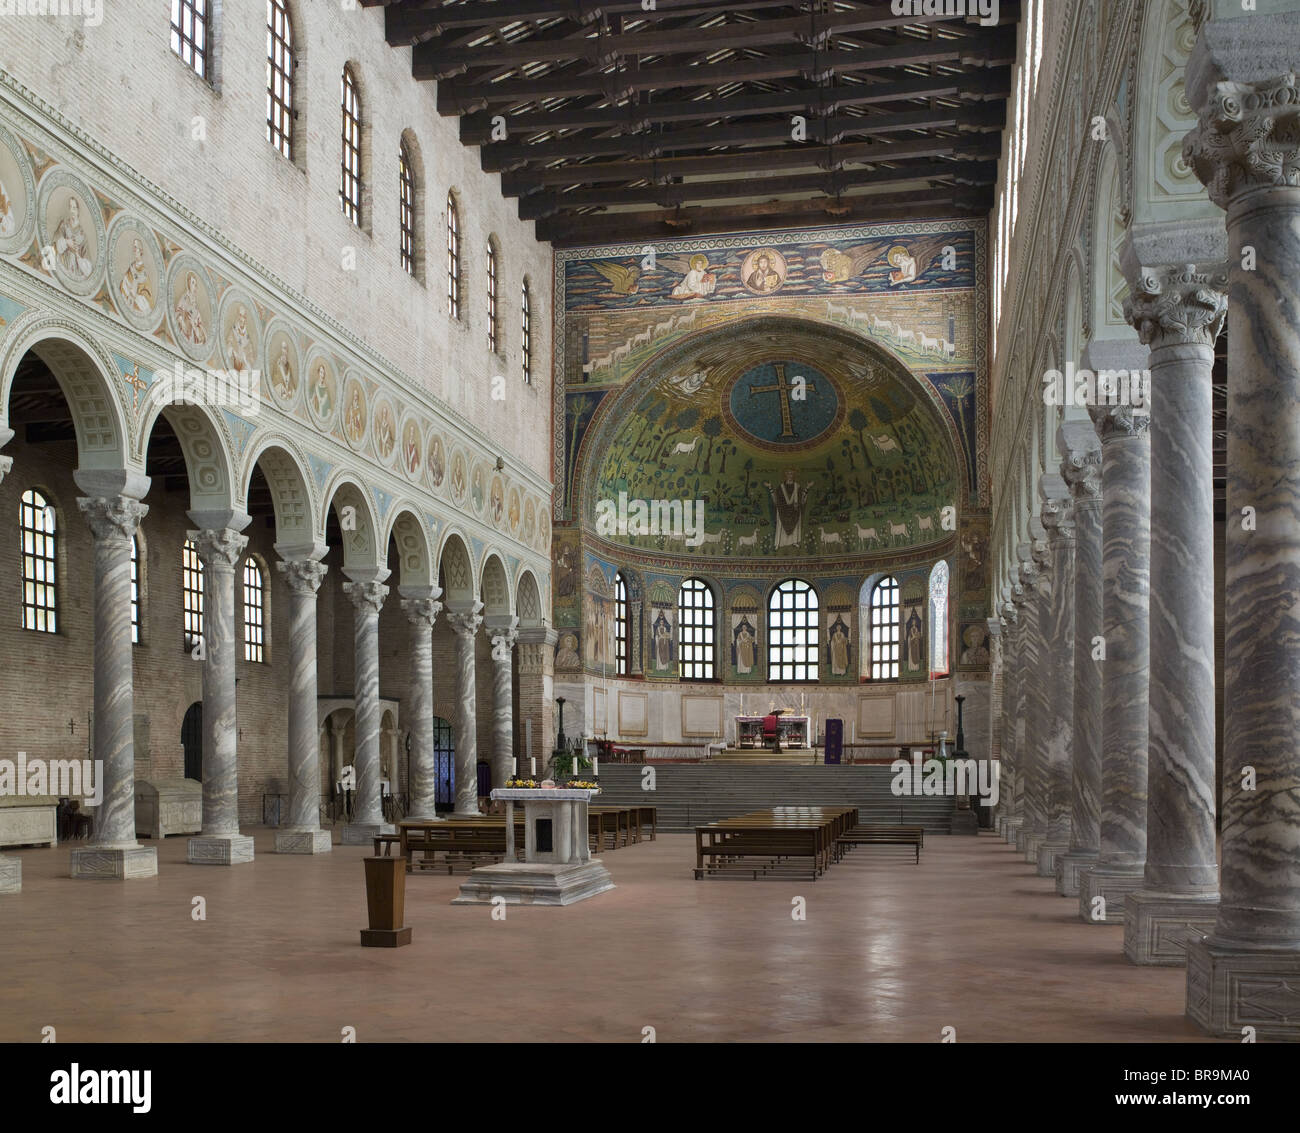 Italia Ravenna Basilica di Sant'Apollinare in Classe. Navata con colonne bizantine e capitelli. Foto Stock